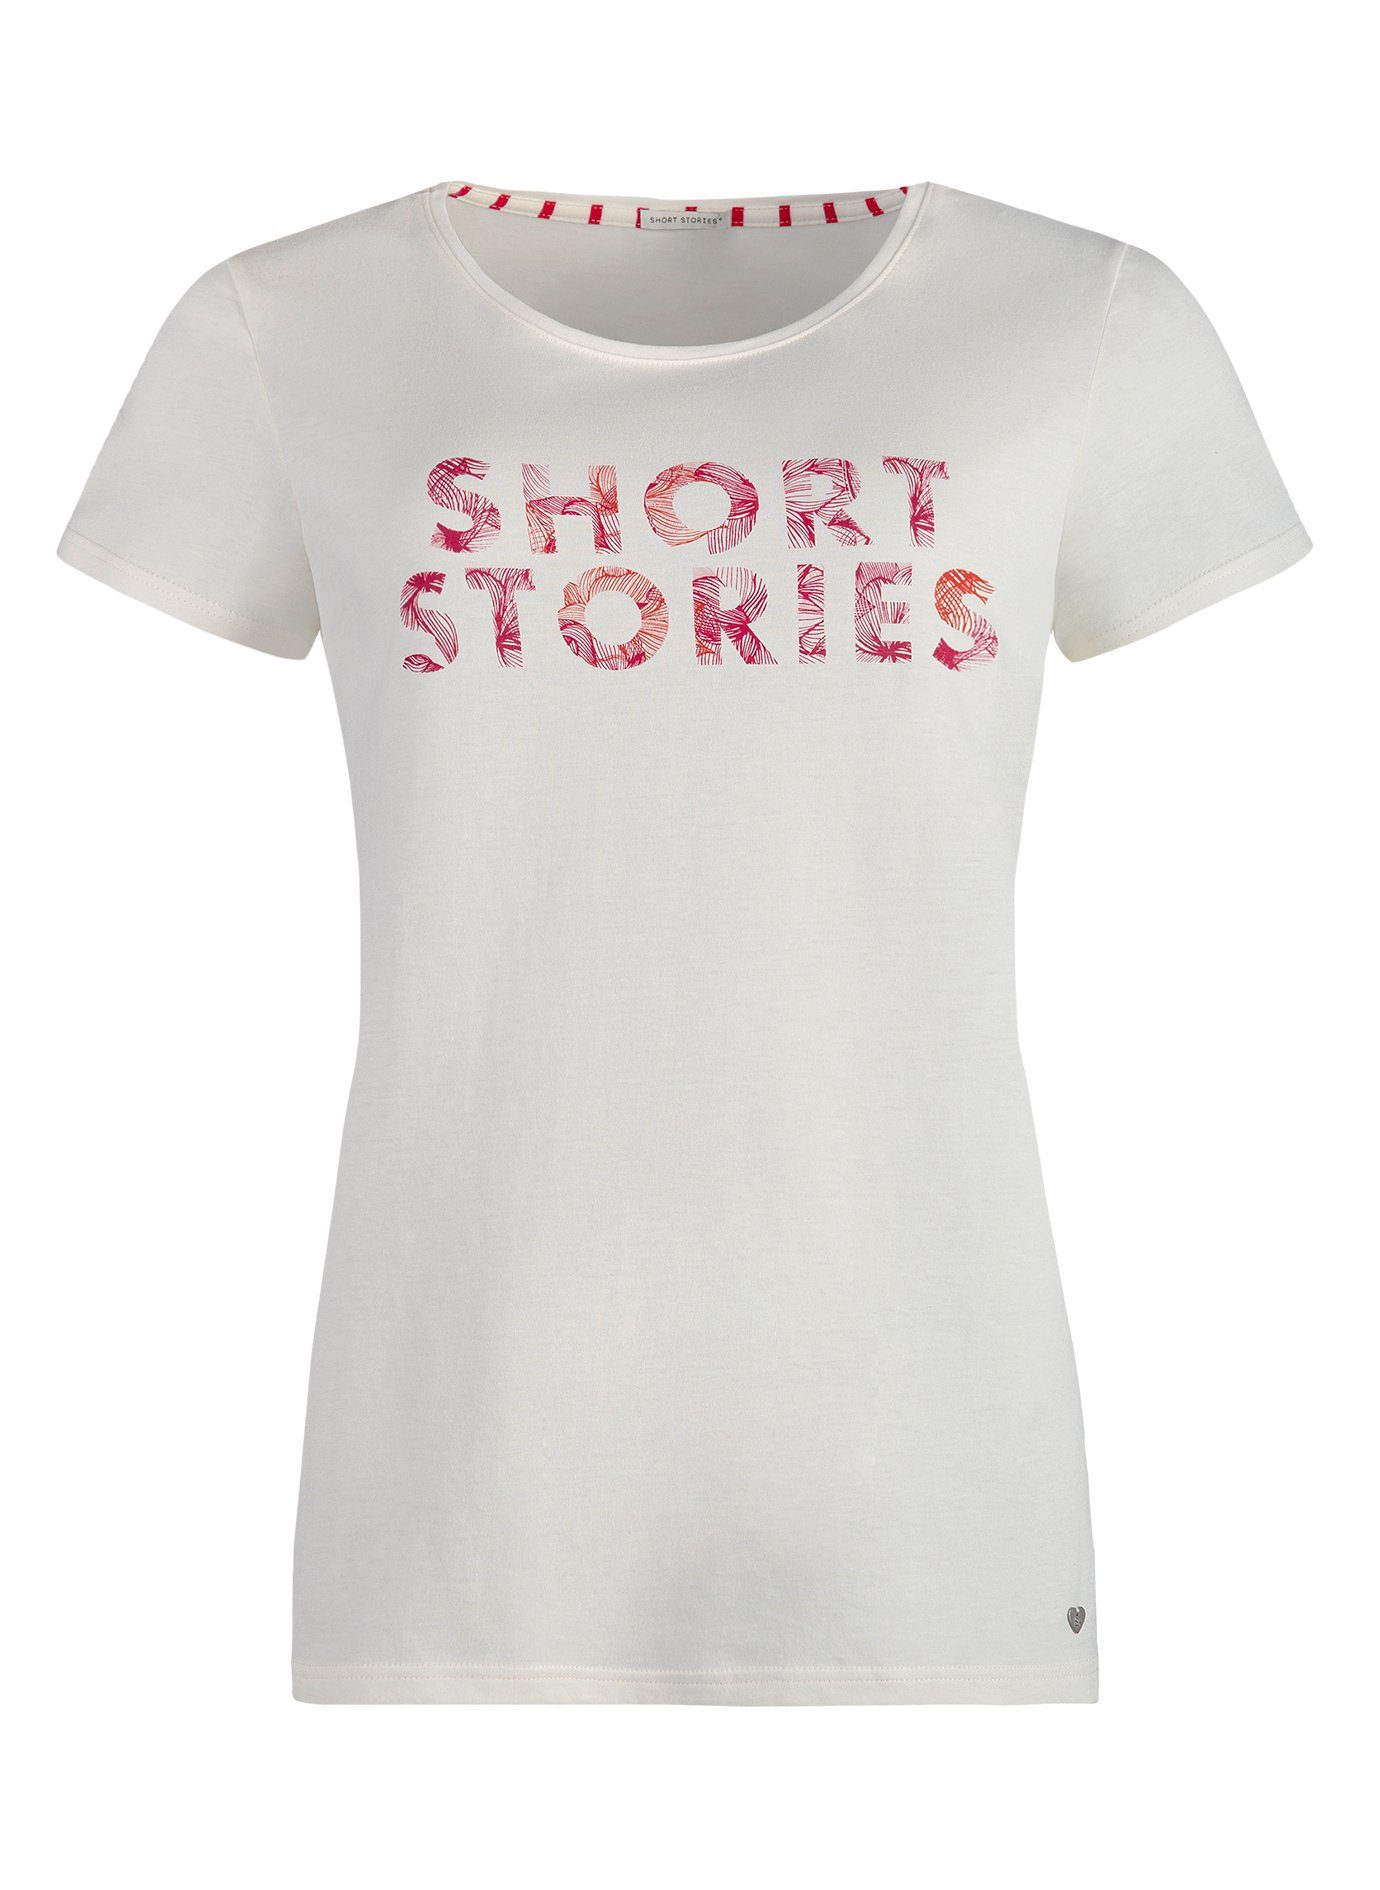 Stories Sanetta kurzarm Short Schlafanzug Shirt Damen Schlafanzugoberteil